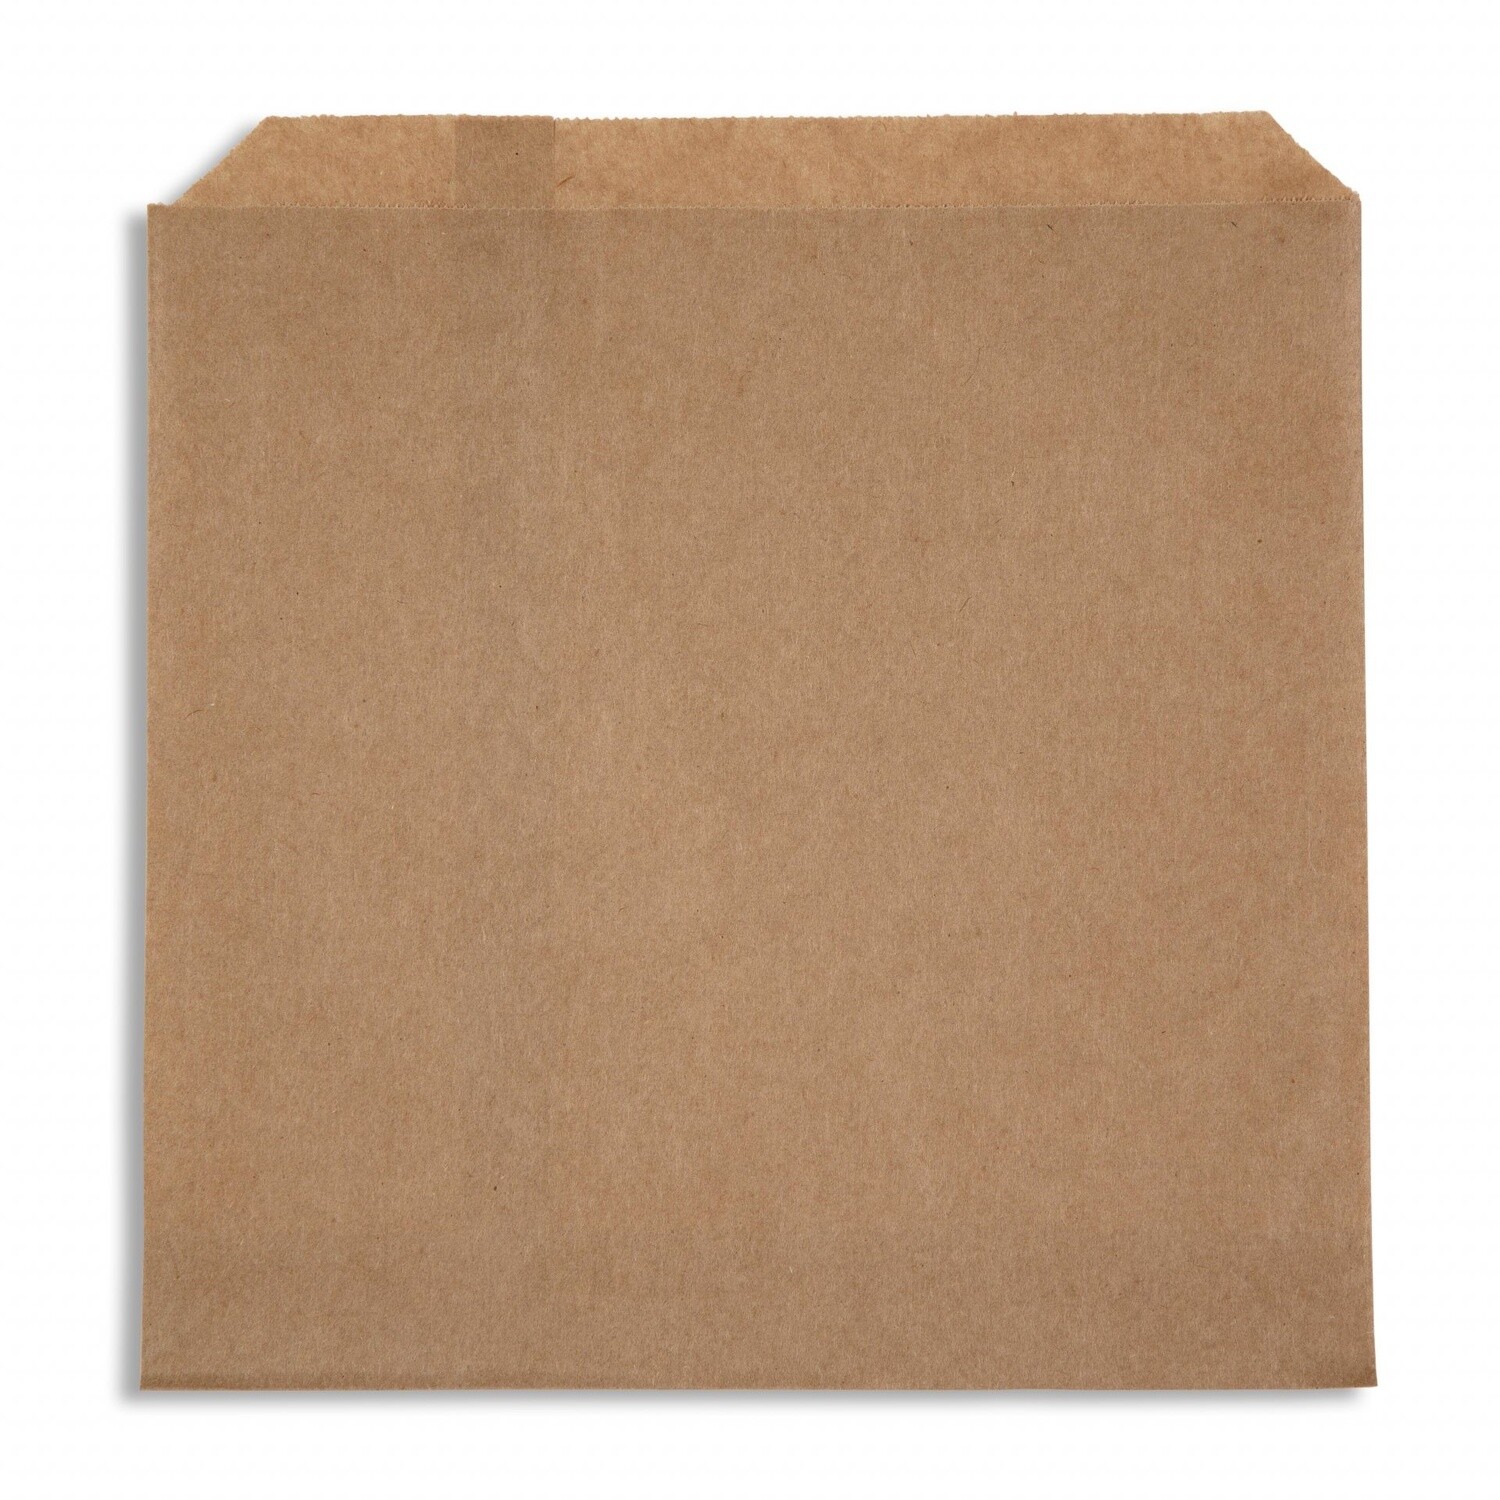 Bag Paper Brown 2SQ (200x200mm) | P / Pack (500)